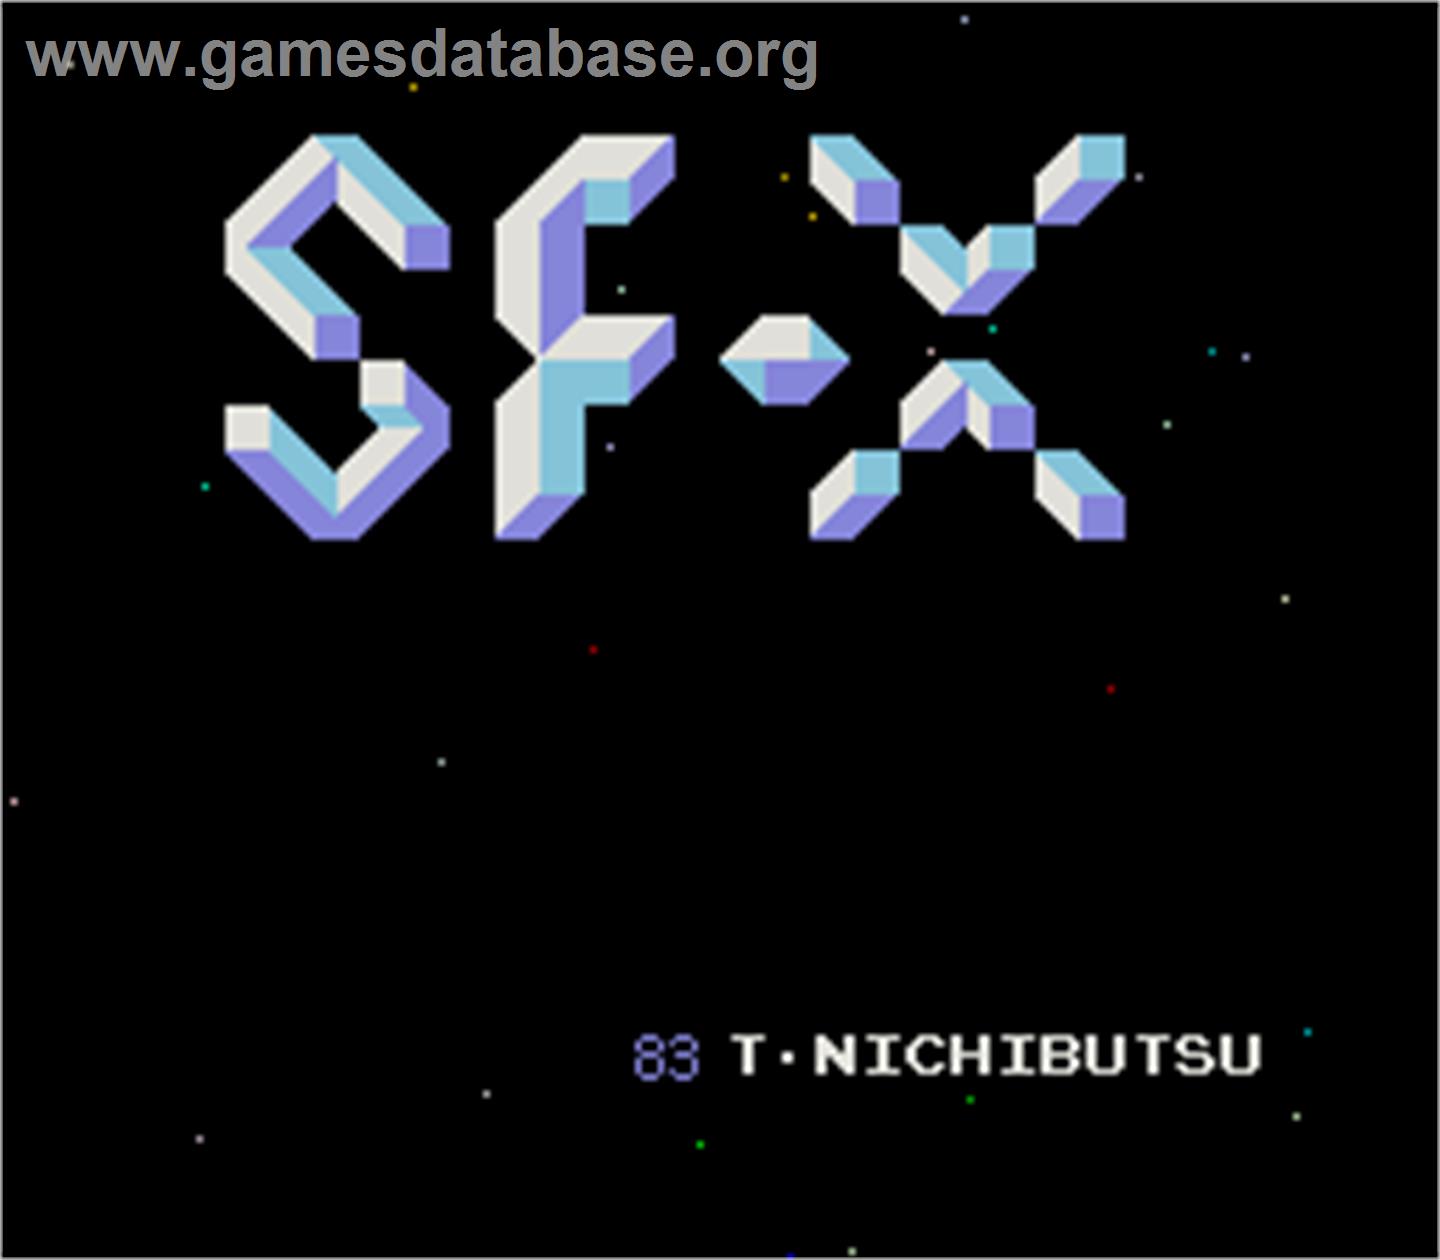 SF-X - Arcade - Artwork - Title Screen